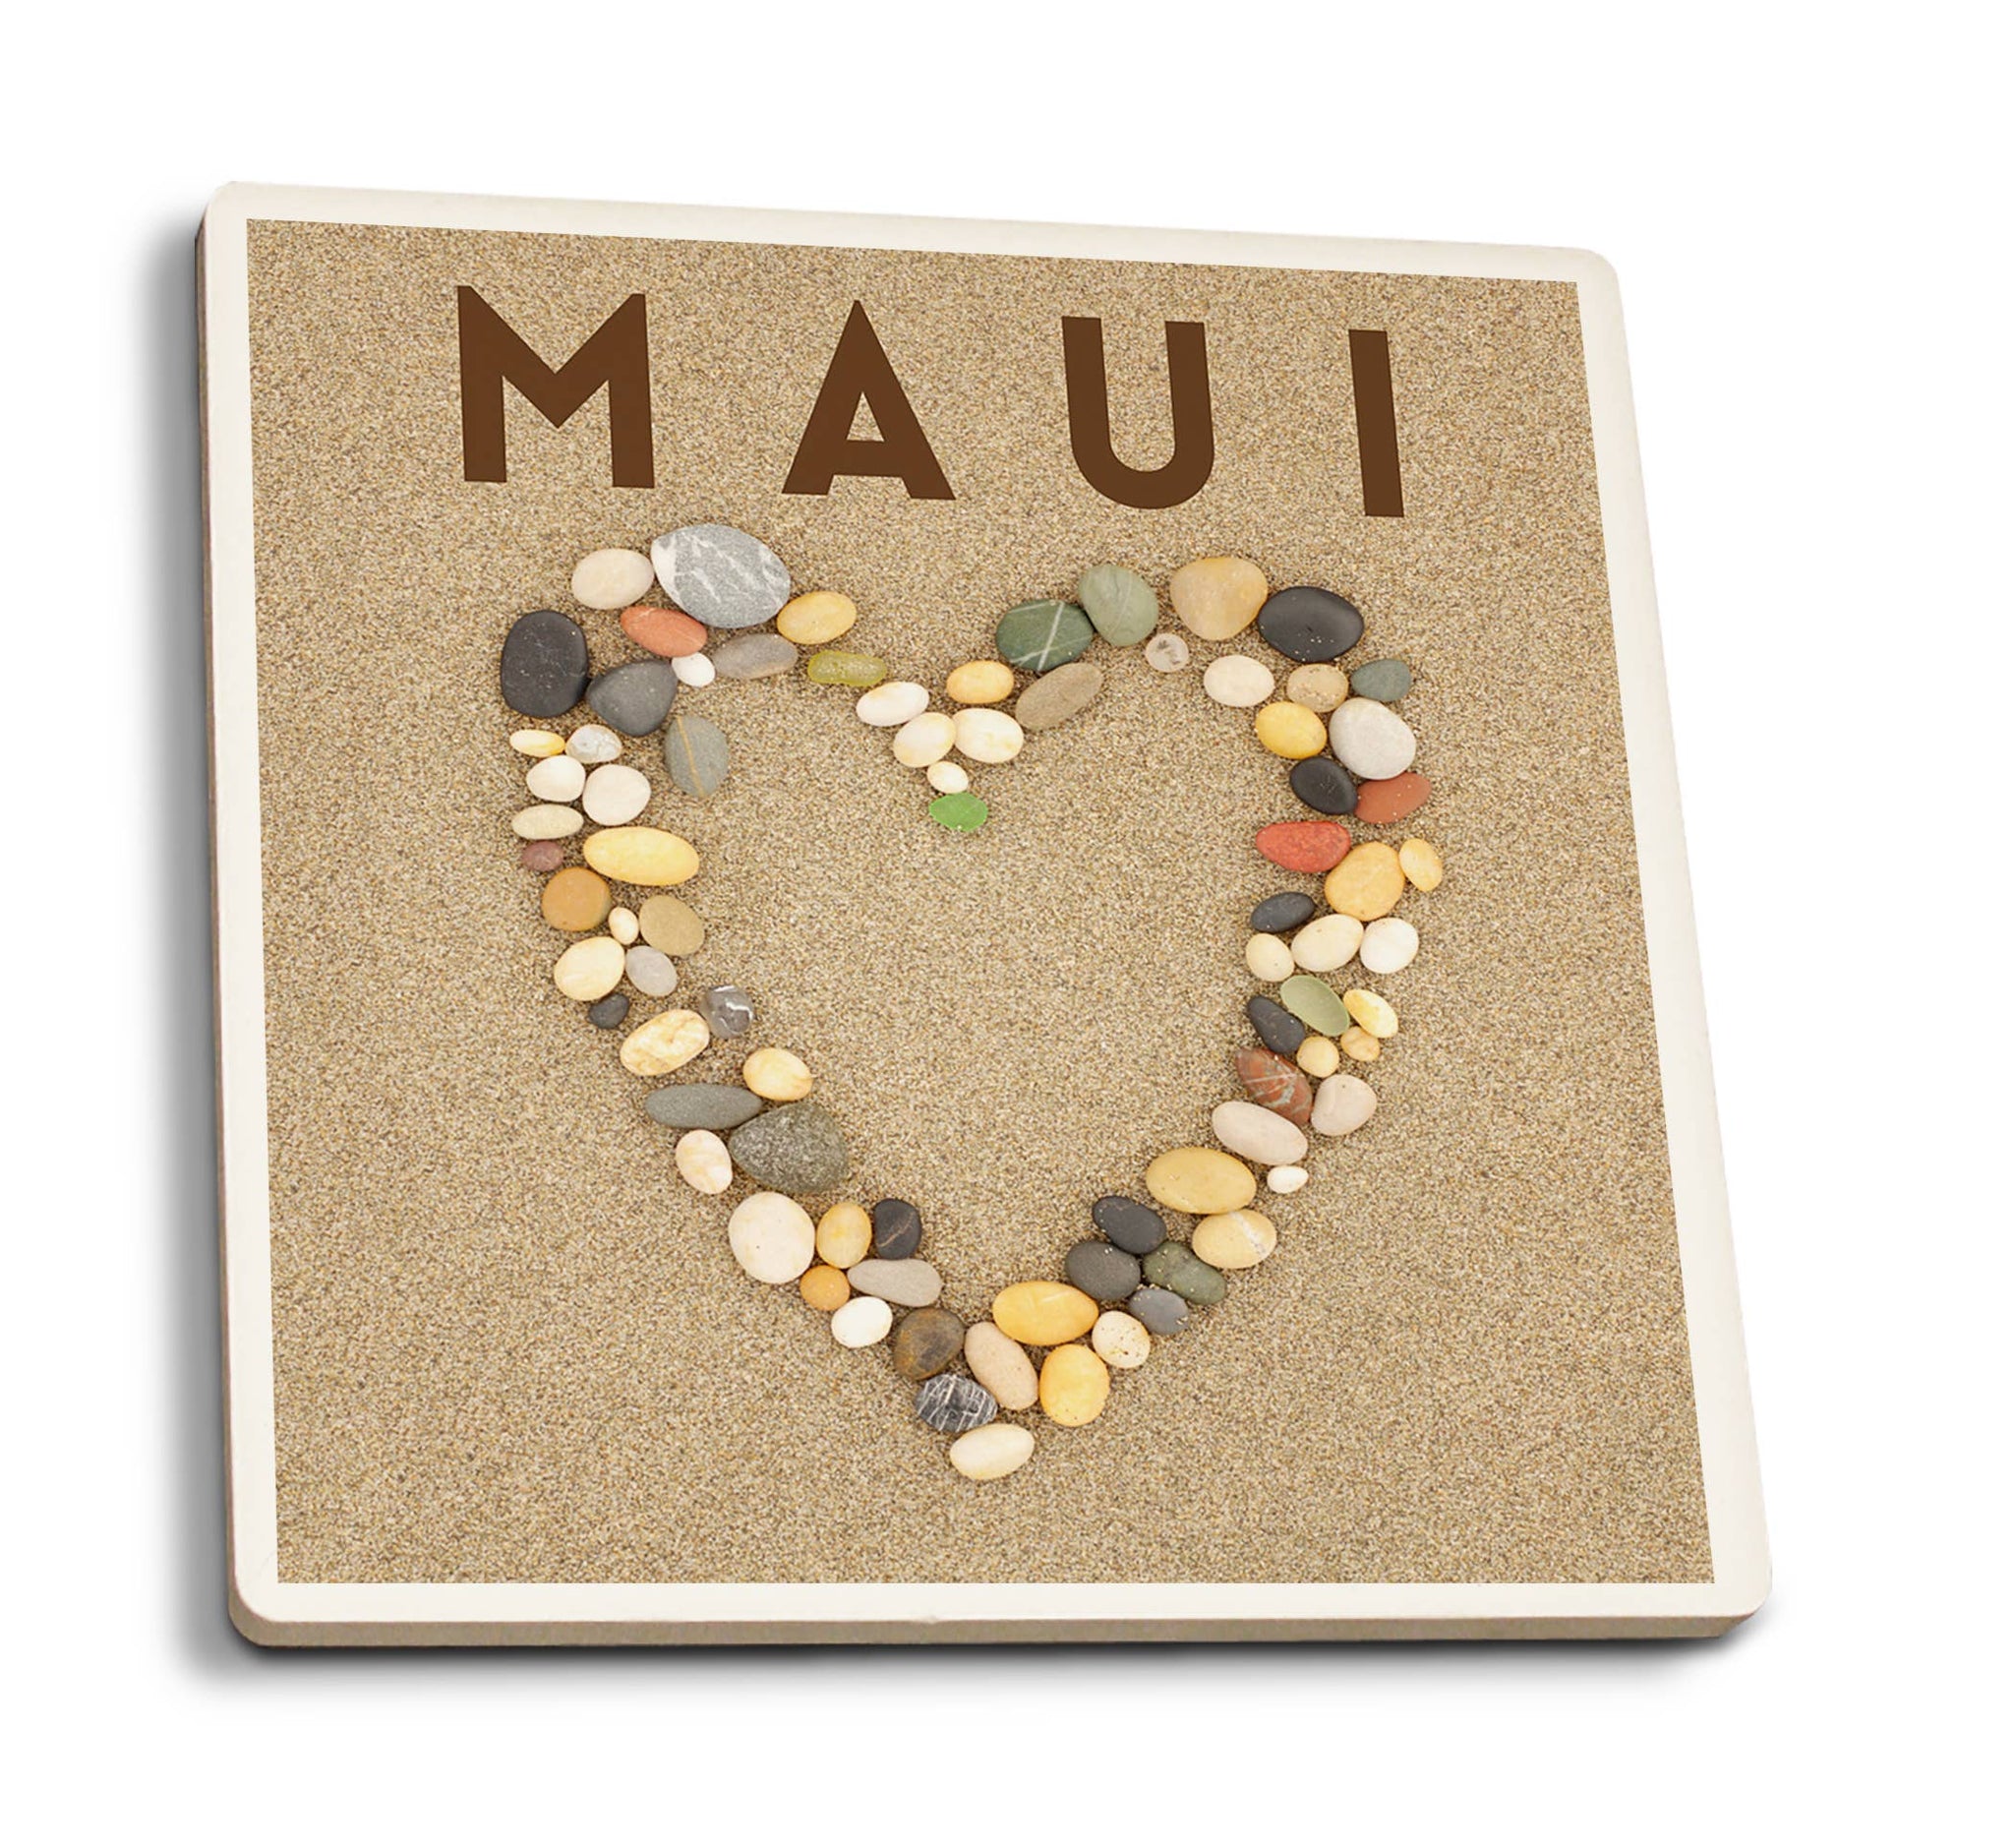 Maui Hawaii Stone Heart on Sand Coaster